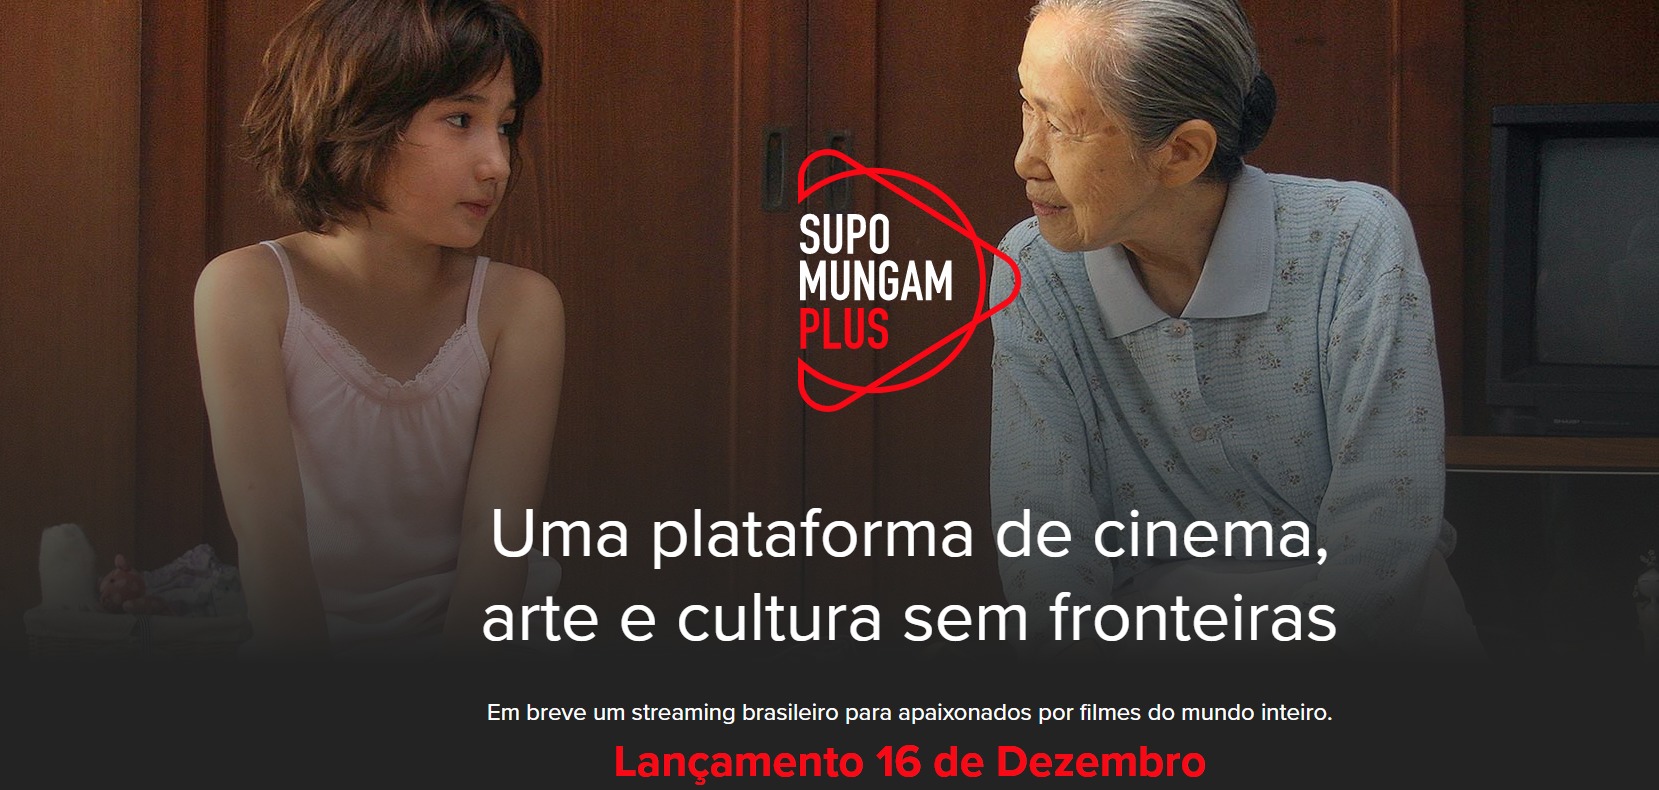 Distribuidora brasileira Supo Mungam lança streaming com filmes independentes